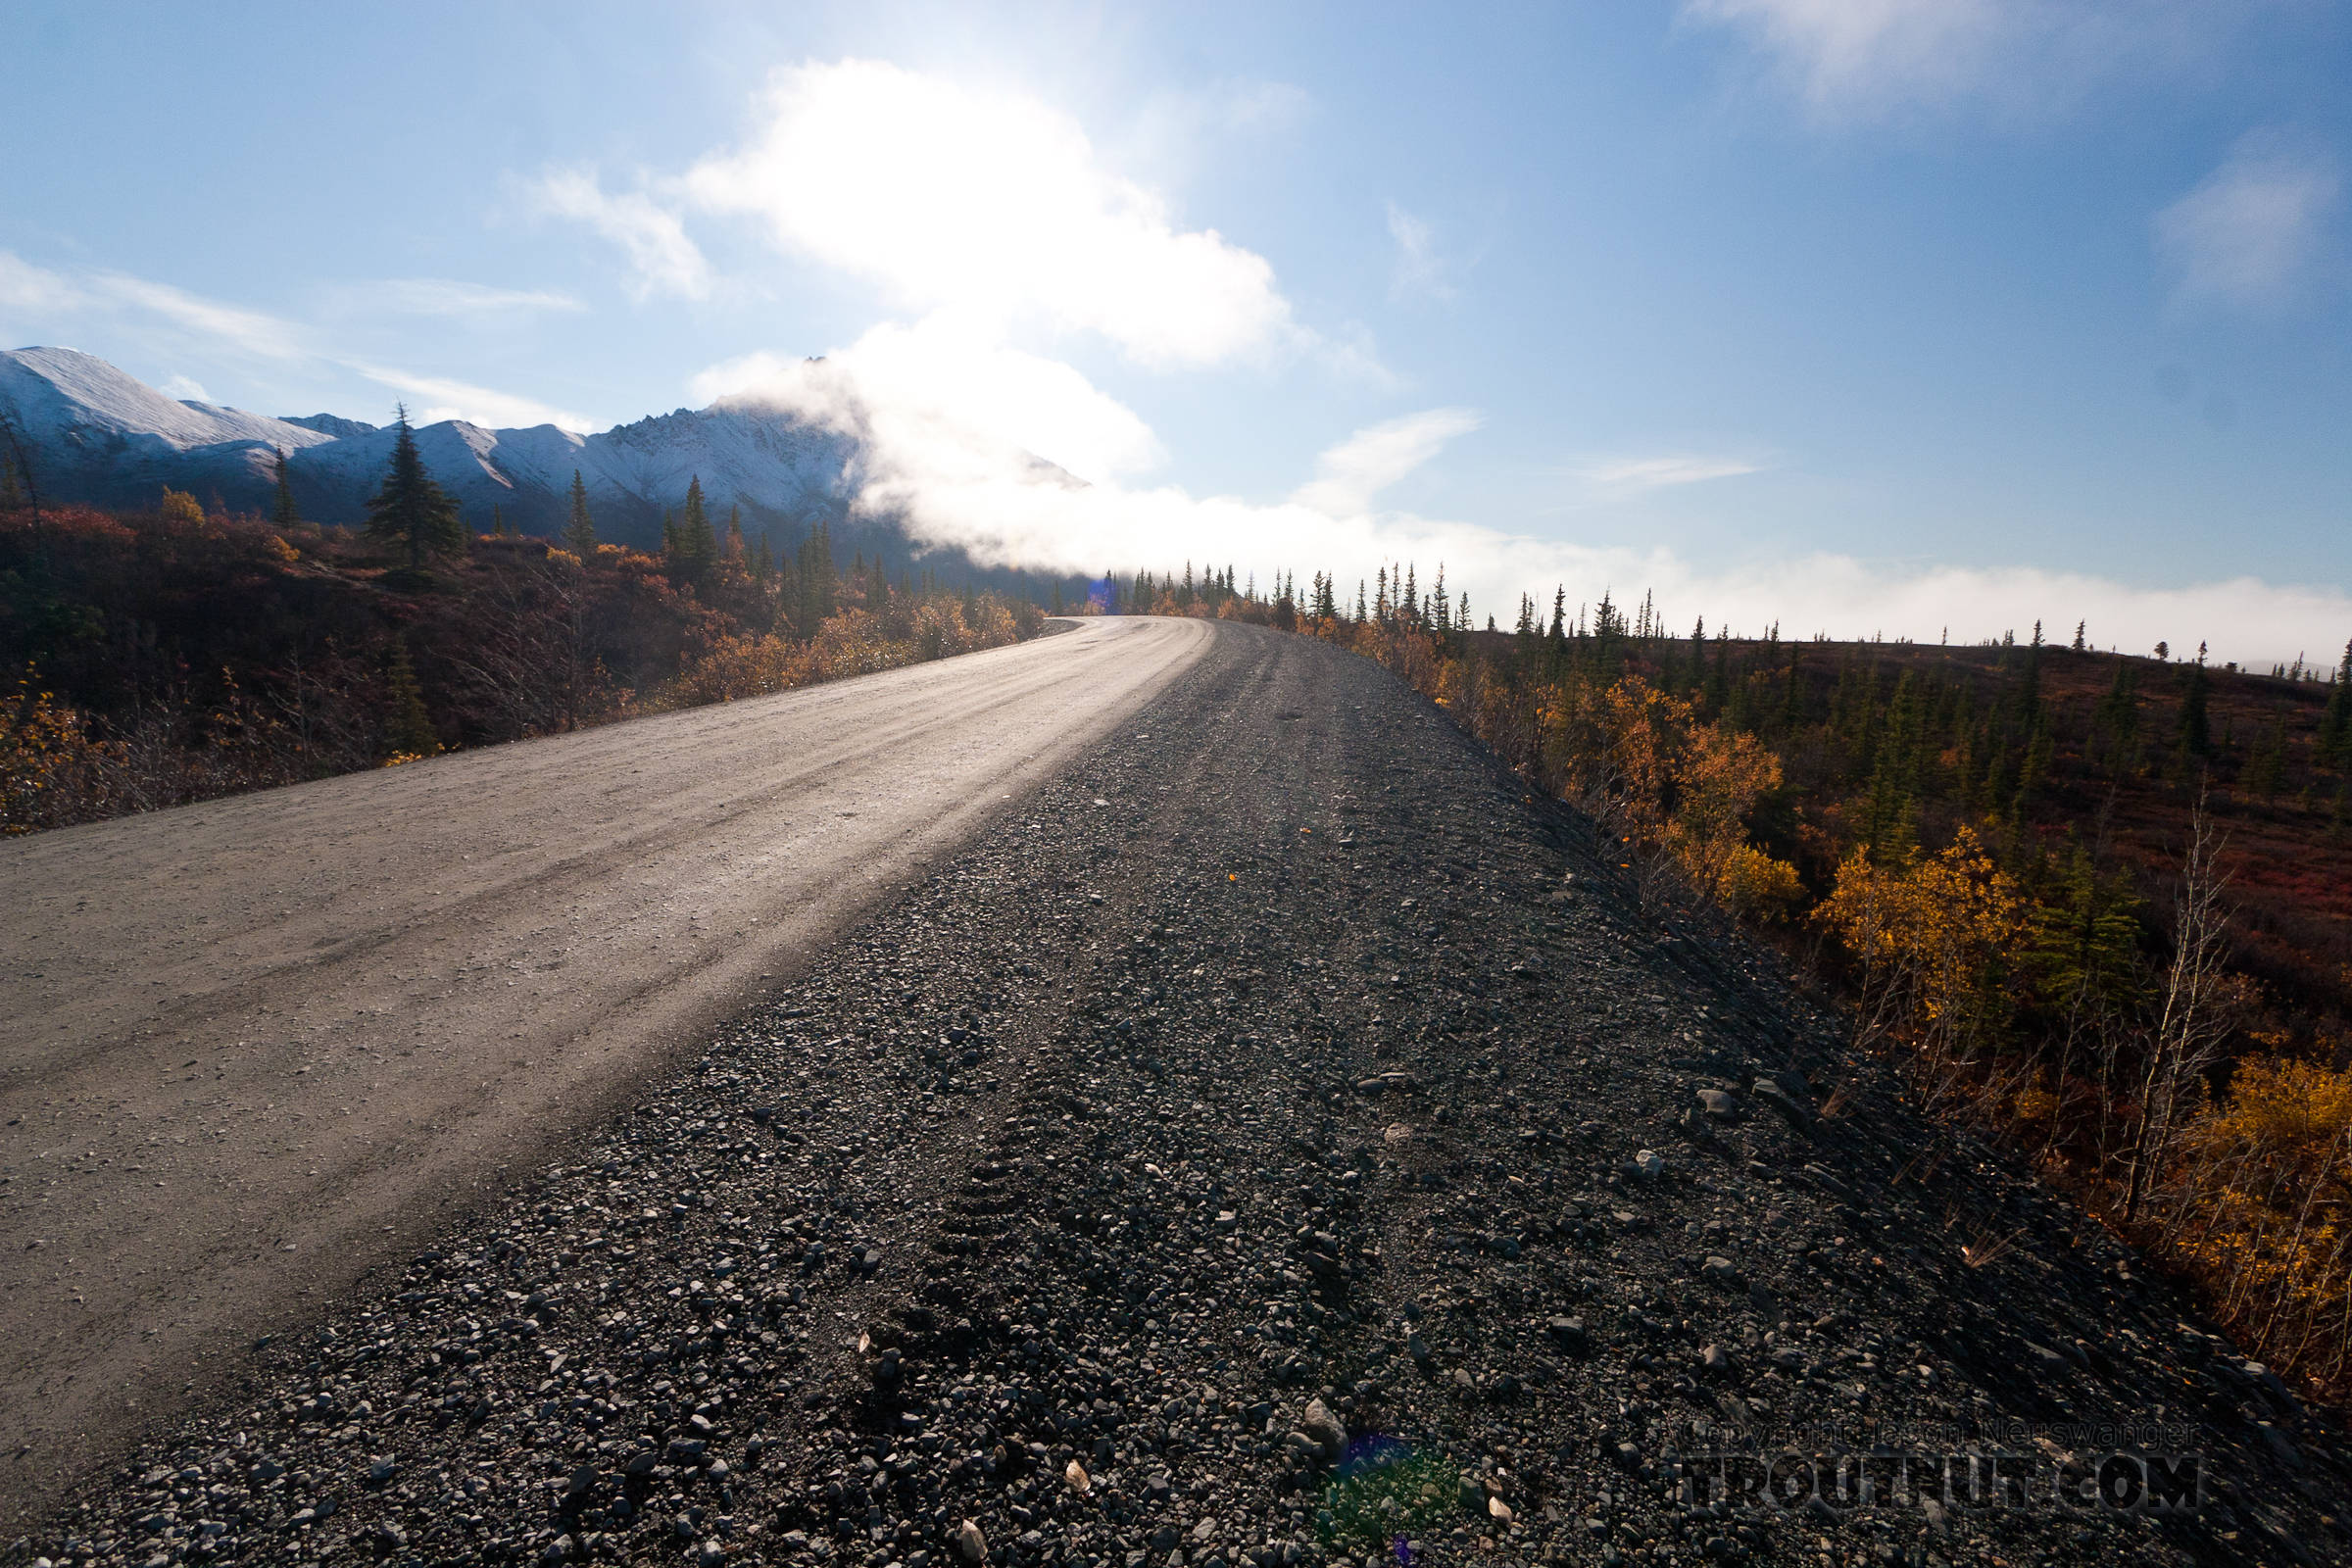  From Denali Highway in Alaska.